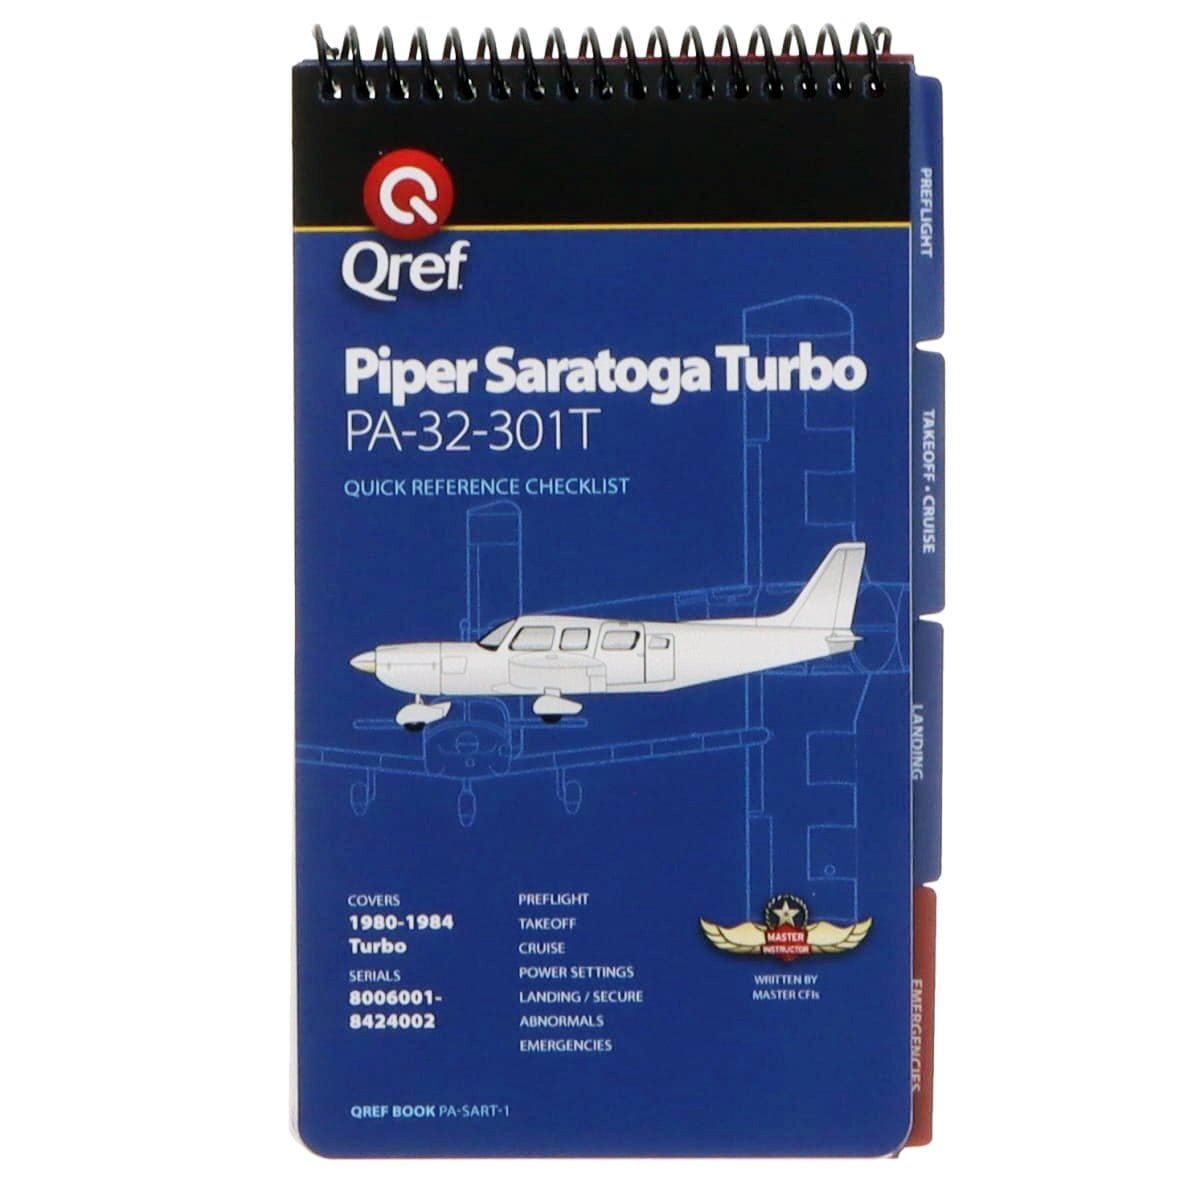 Piper Saratoga Turbo PA-32-301T (1980-84) Qref Book Checklist - PilotMall.com